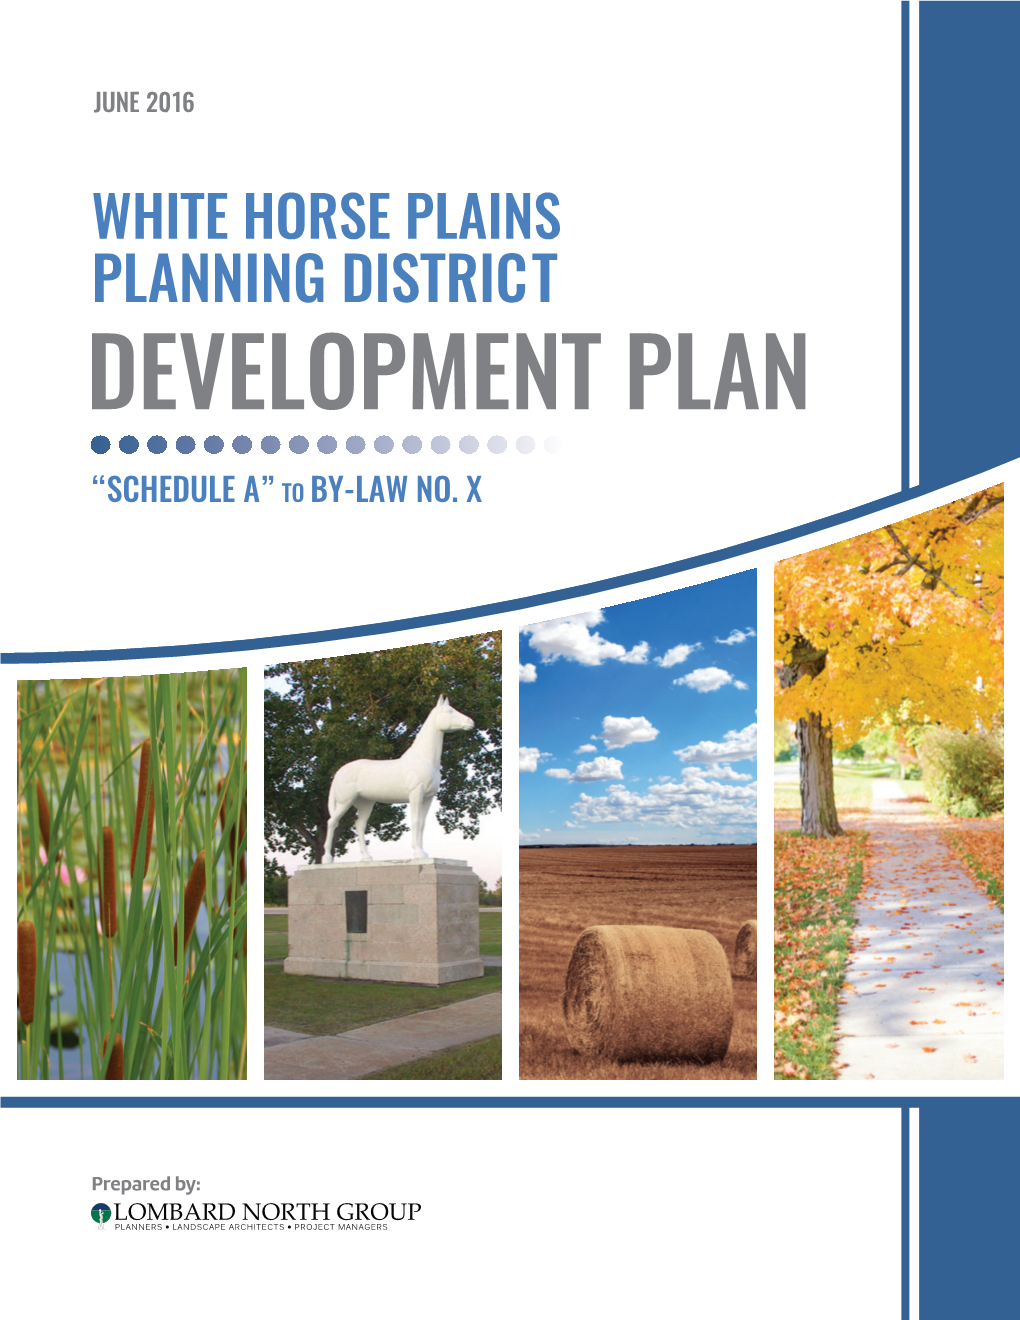 Planning District Development Plan